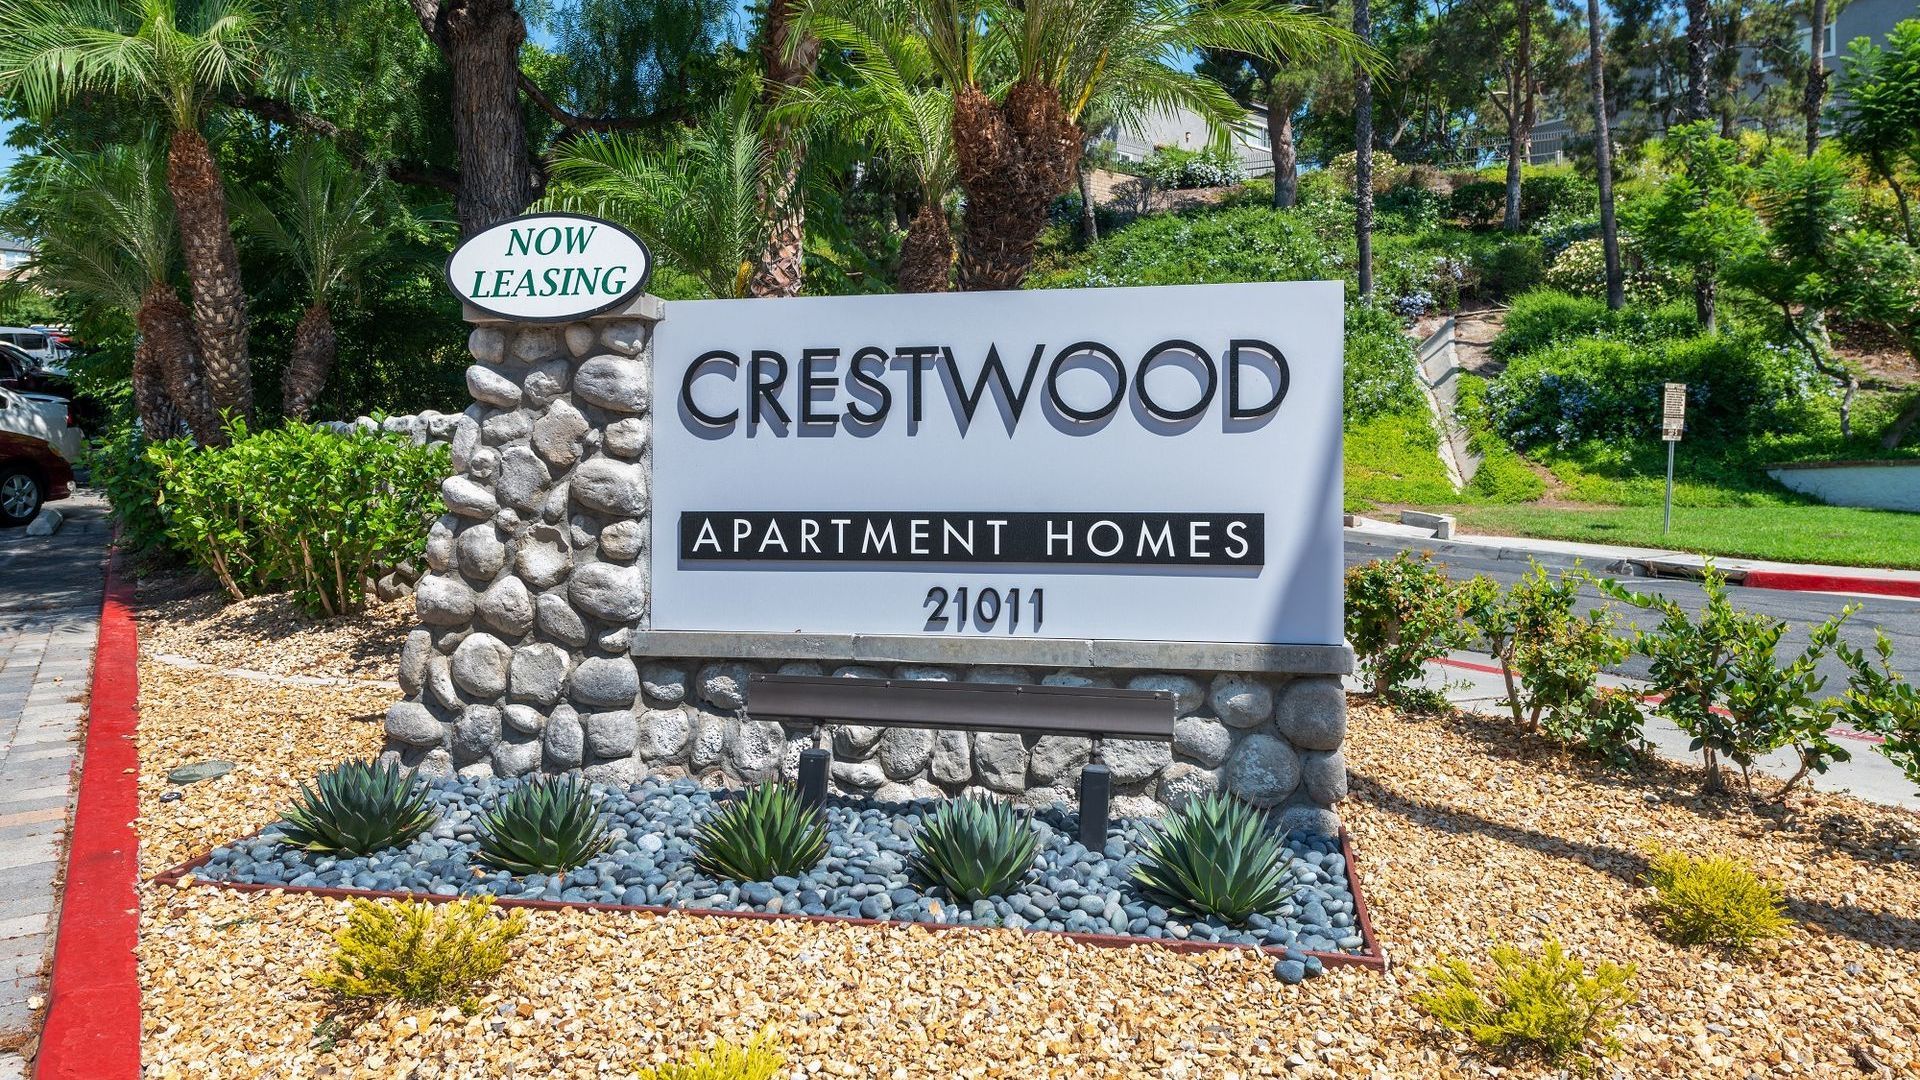 Crestwood signage